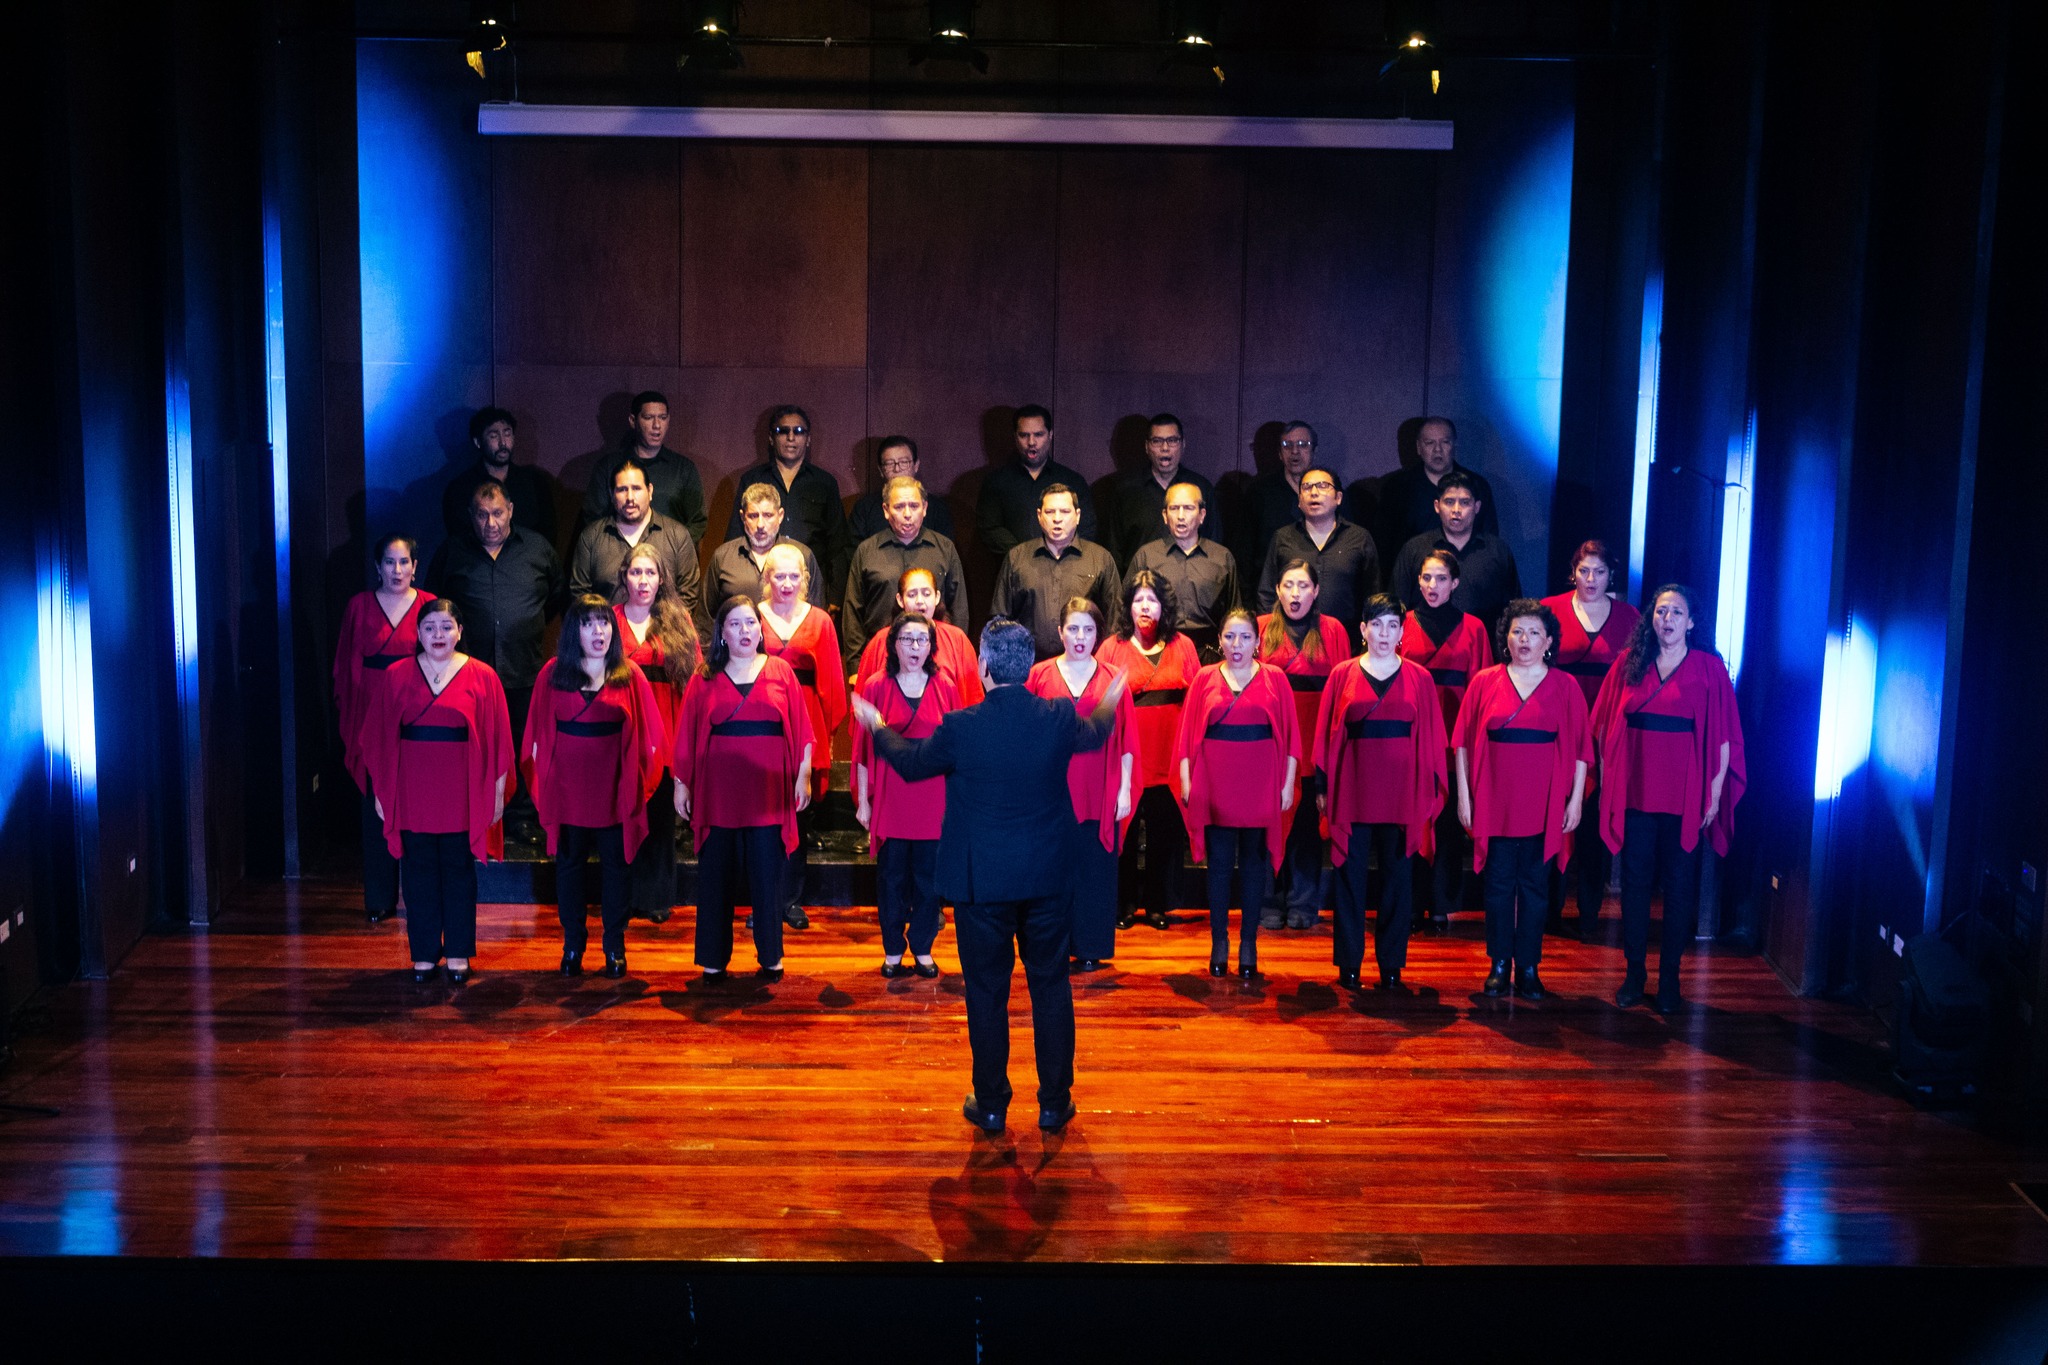 Coro Nacional del Perú presentó su concierto “Del Perú al mundo” en la renovada Sala Alzedo